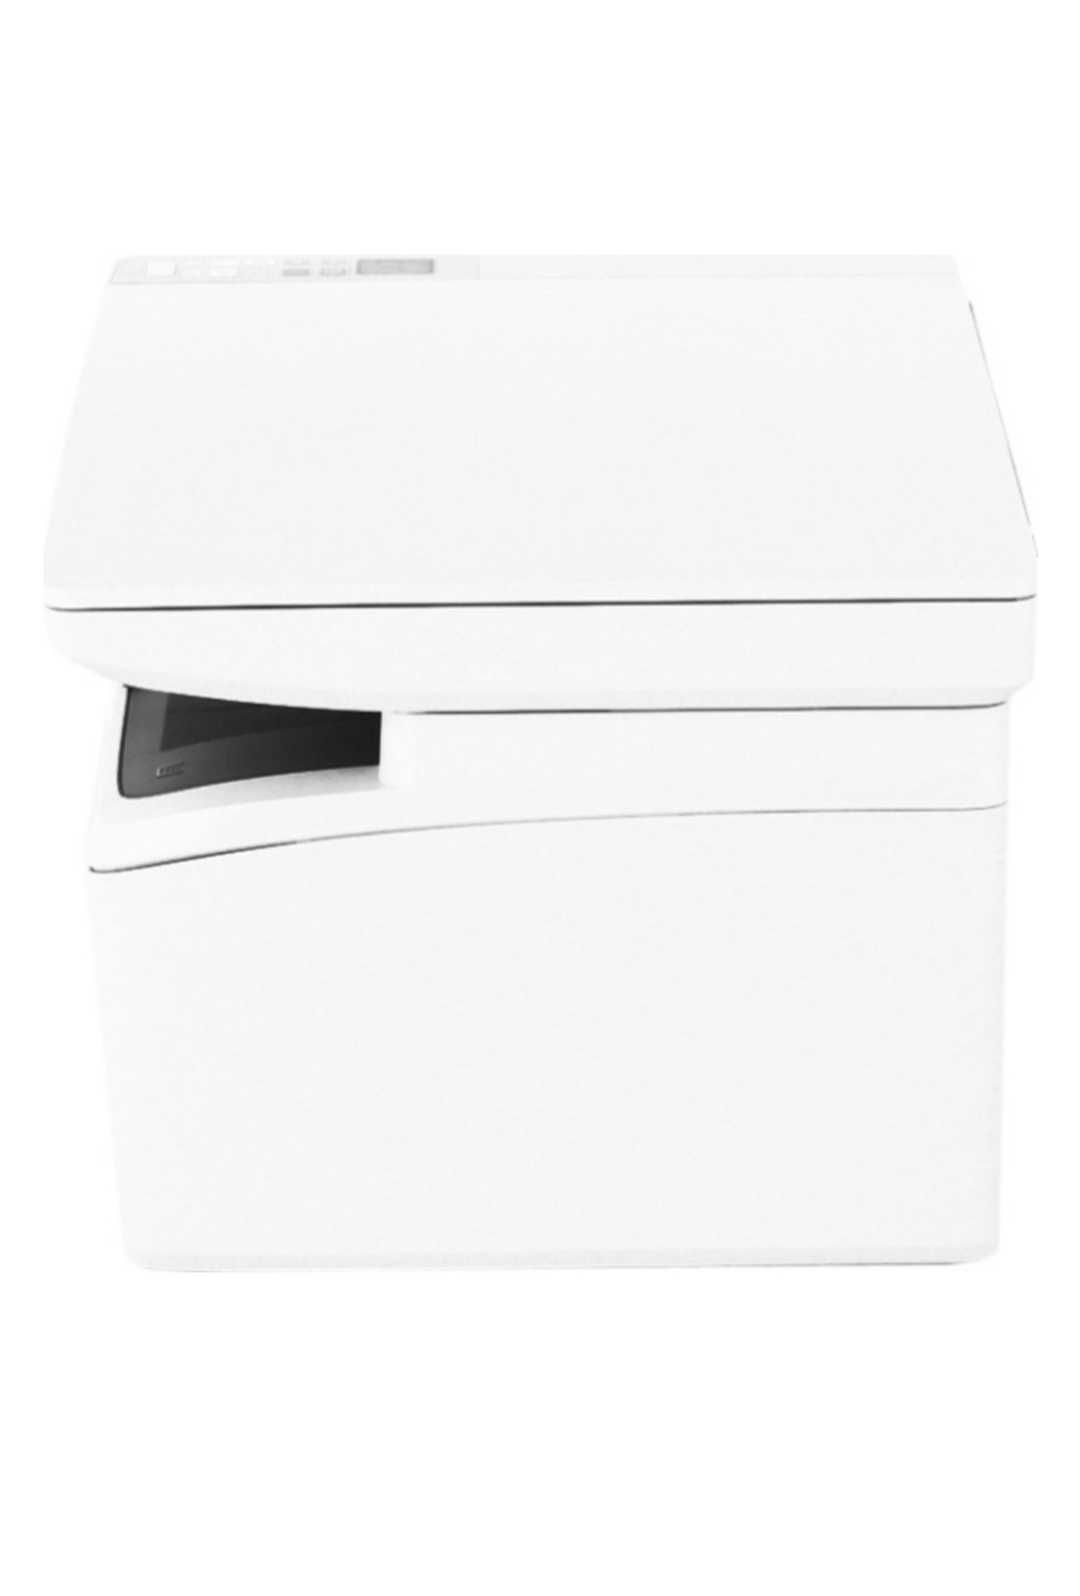 Принтер новый  МФУ HP LaserJet Pro MFP M28w